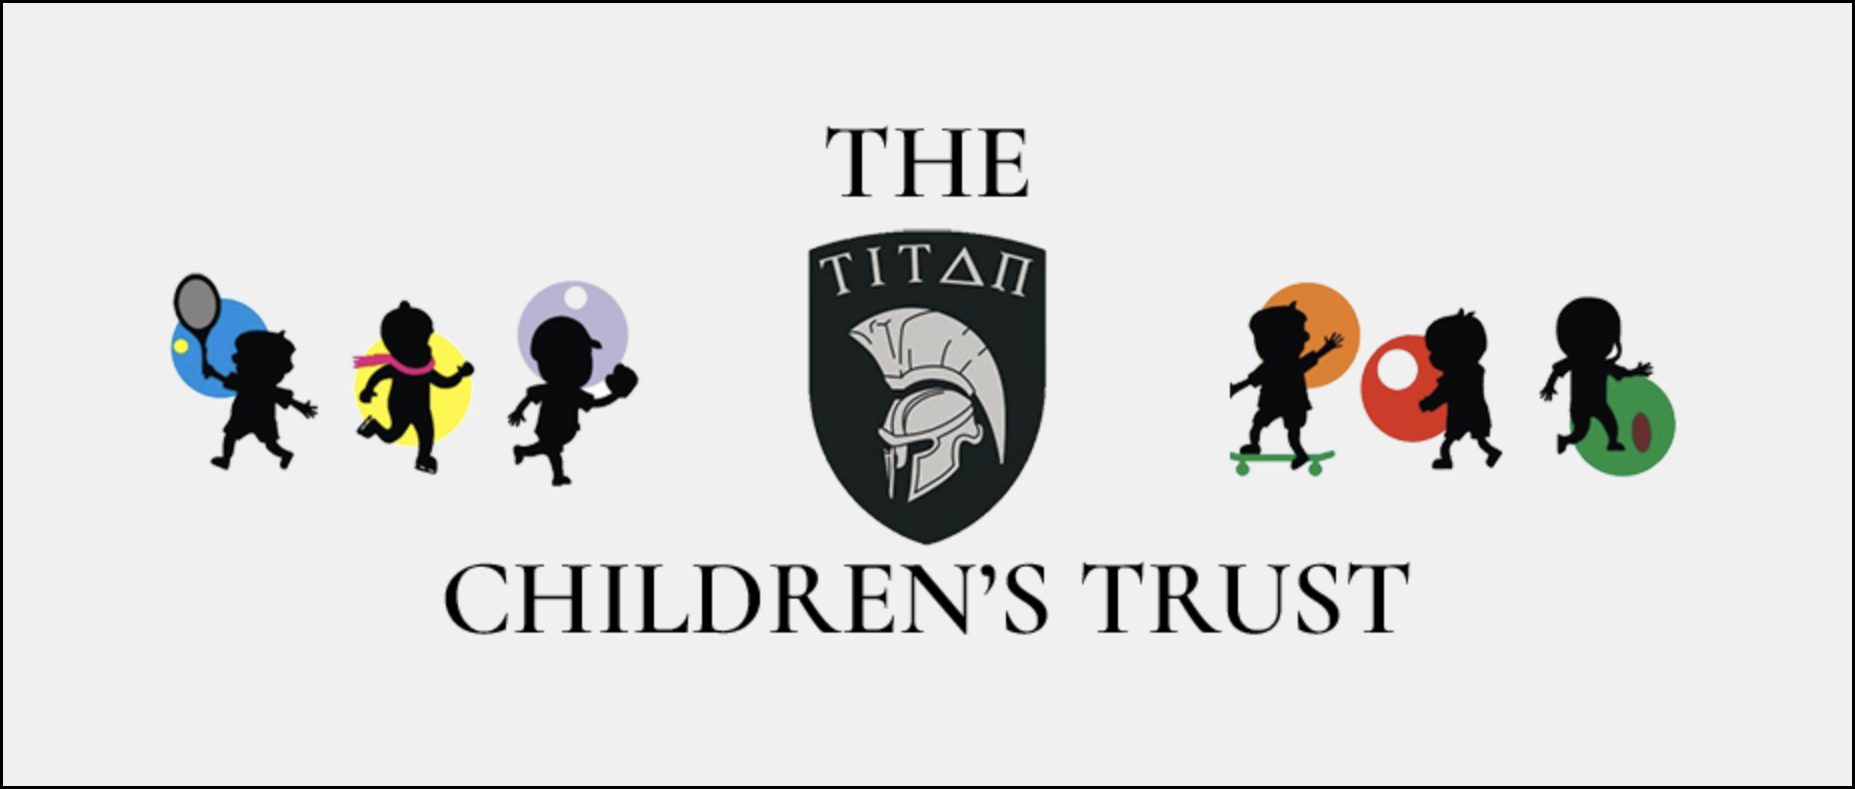 The Titan Children's Trust